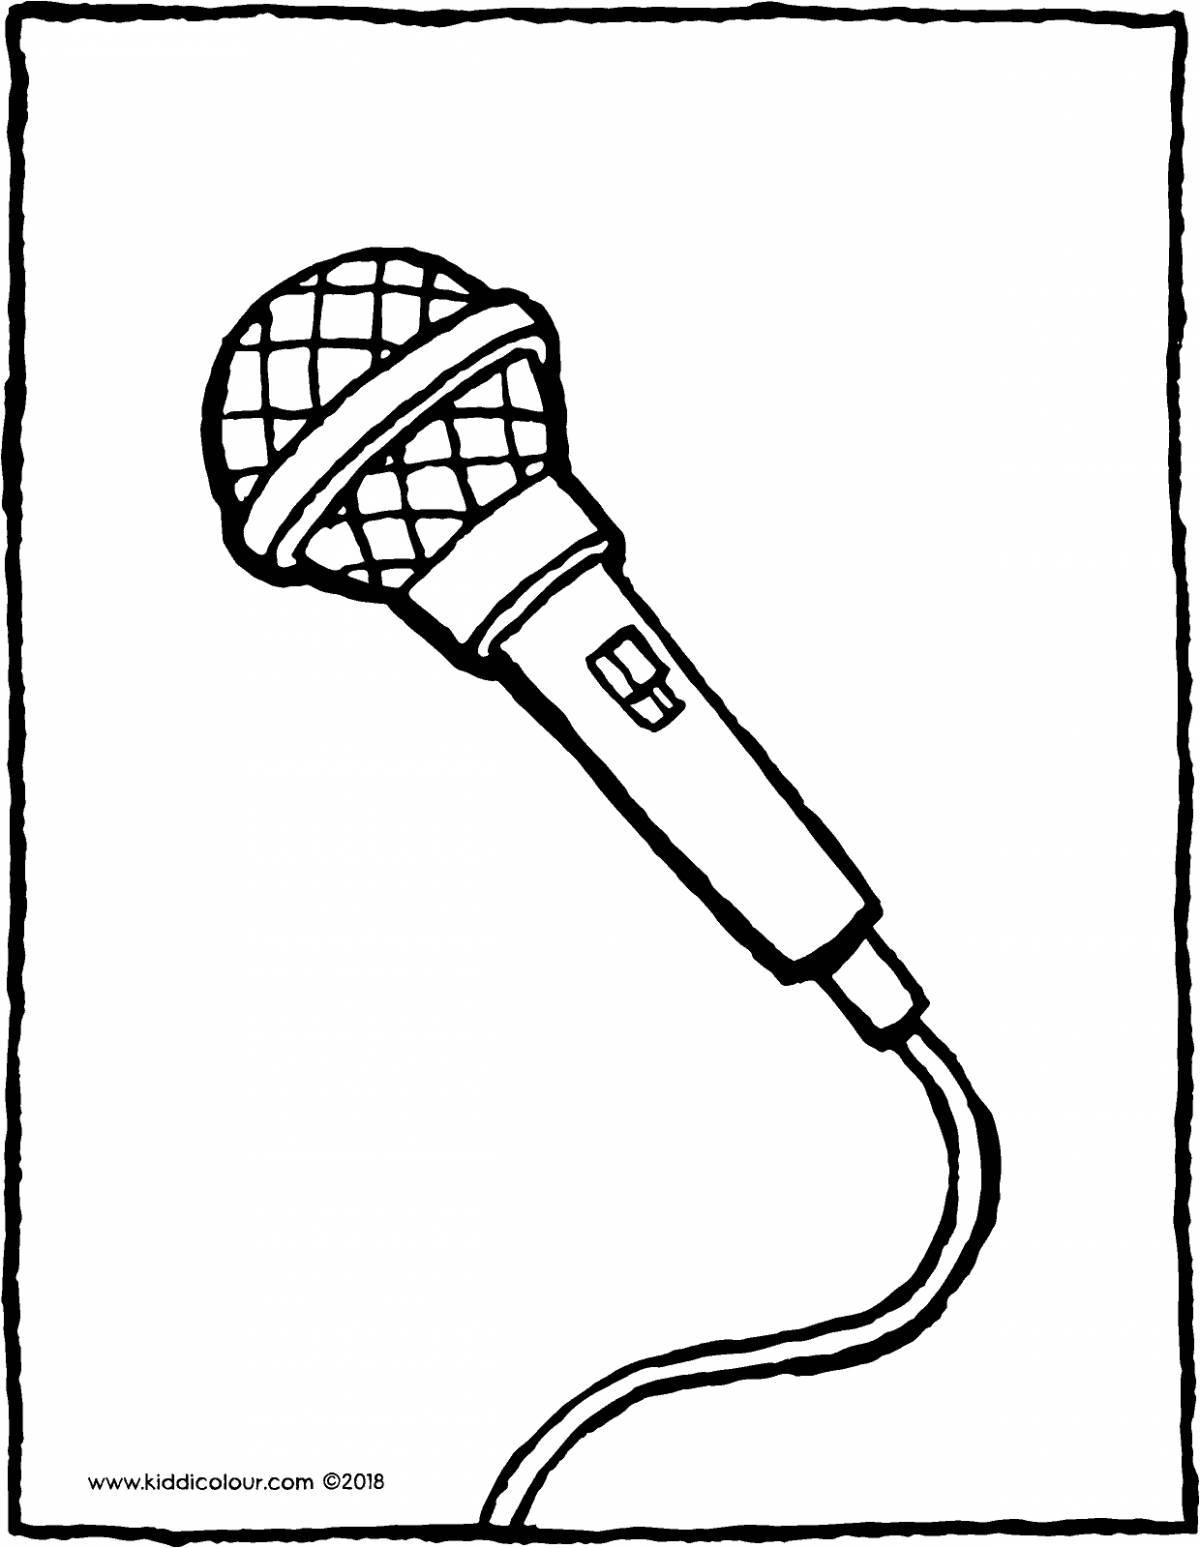 Fun microphone coloring